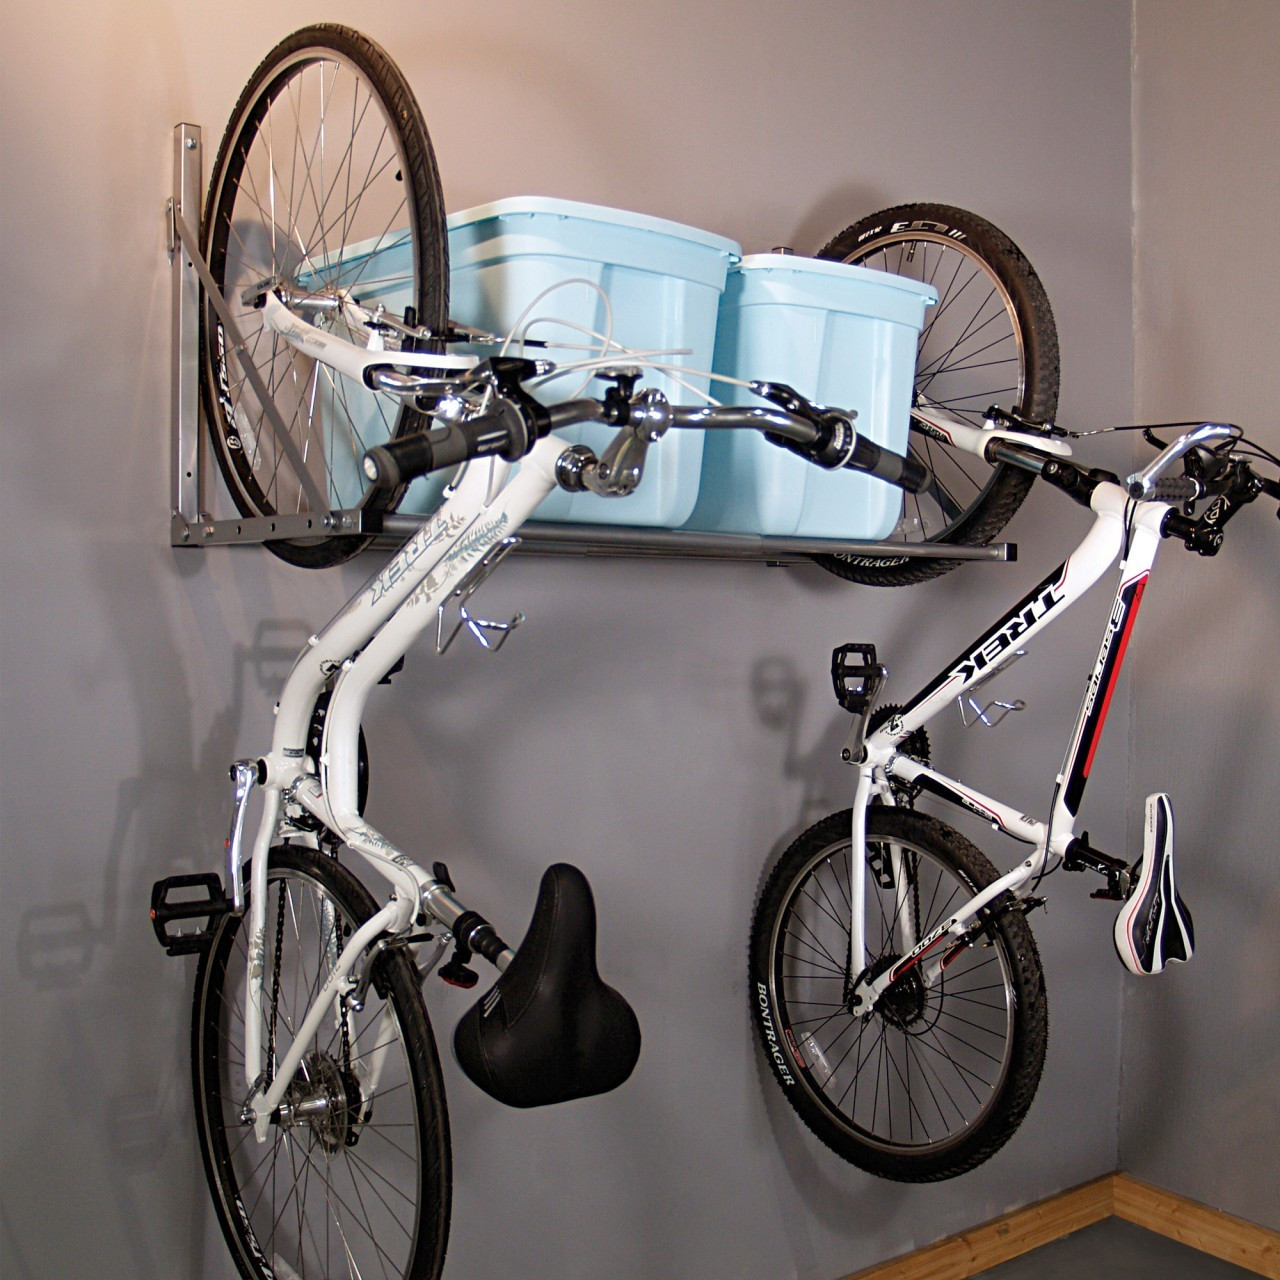 Best ideas about DIY Garage Bike Rack
. Save or Pin 15 neat garage organization ideas Now.